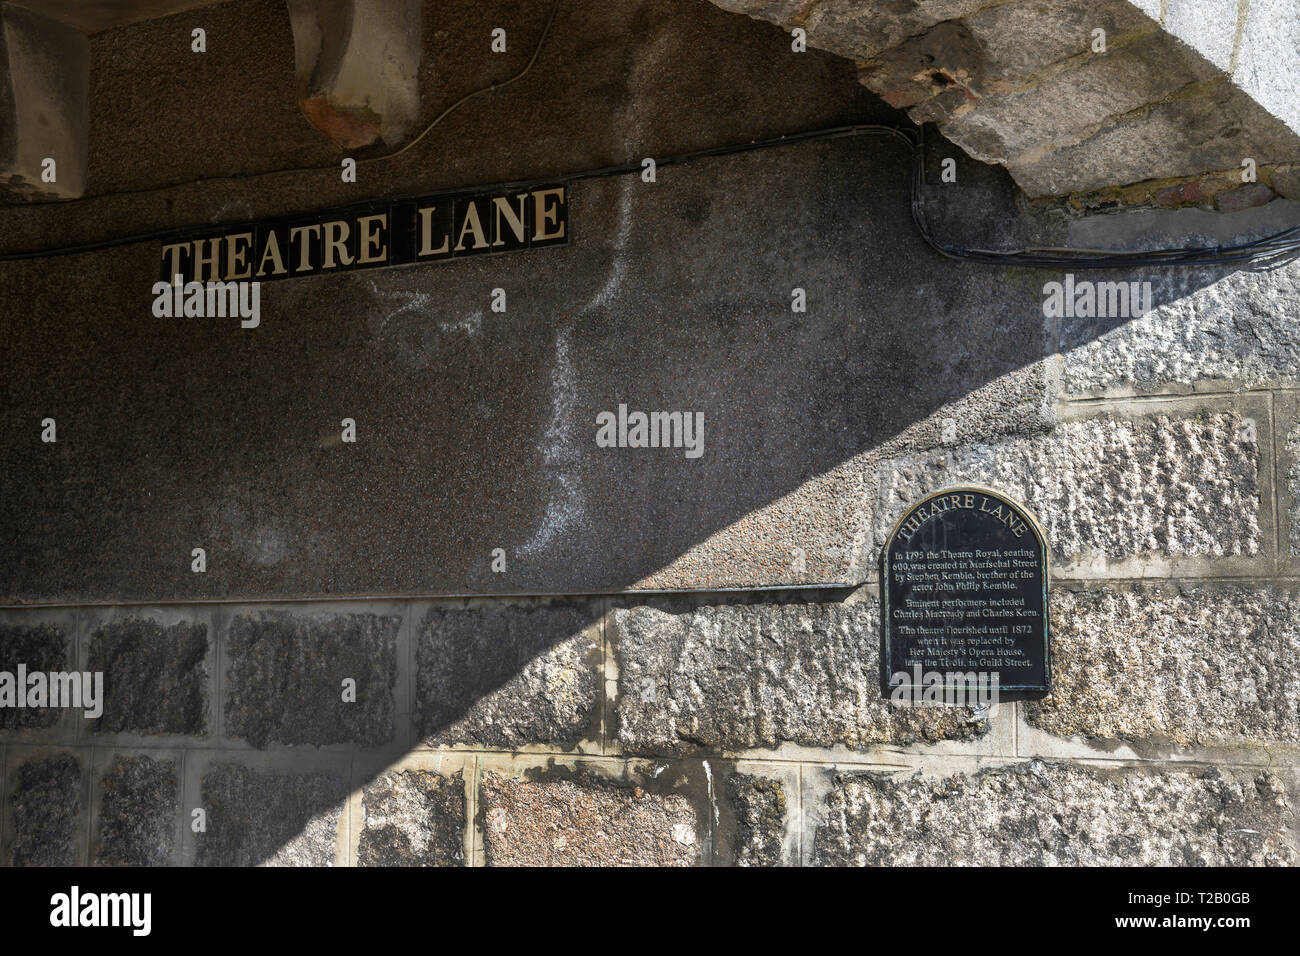 Eingang zum Theater Lane von Regent Street, Aberdeen City Centre, Aberdeen, Aberdeenshire, Schottland, UK, Namensschild und Erbe Gedenktafel. Stockfoto